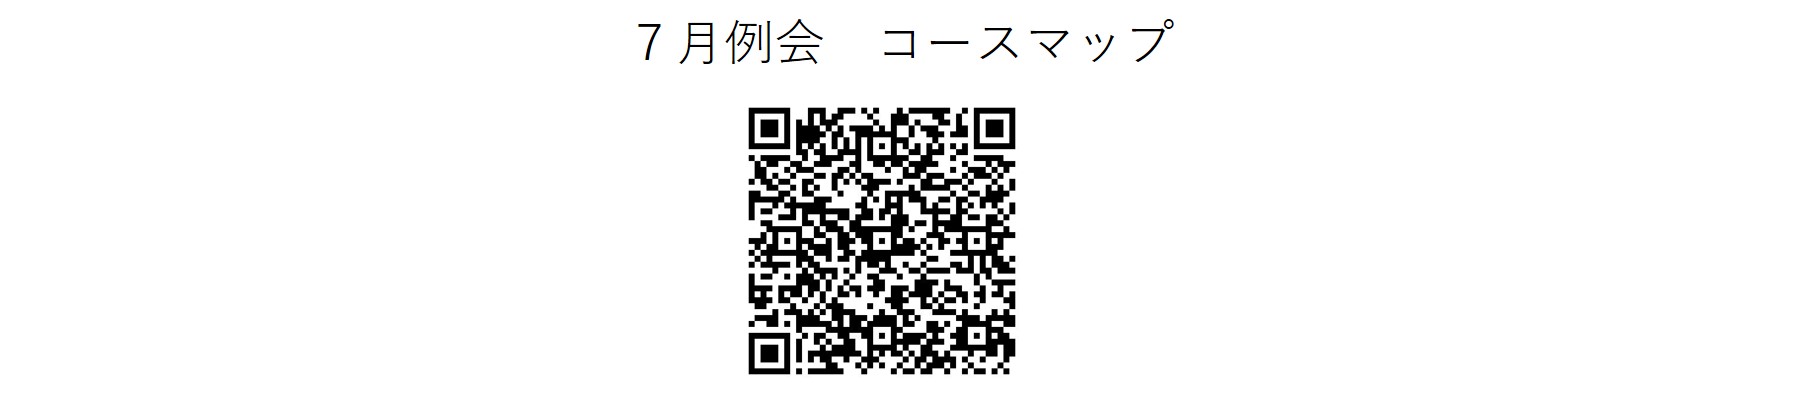 かしわんぽ用7月例会コースマップ.jpg